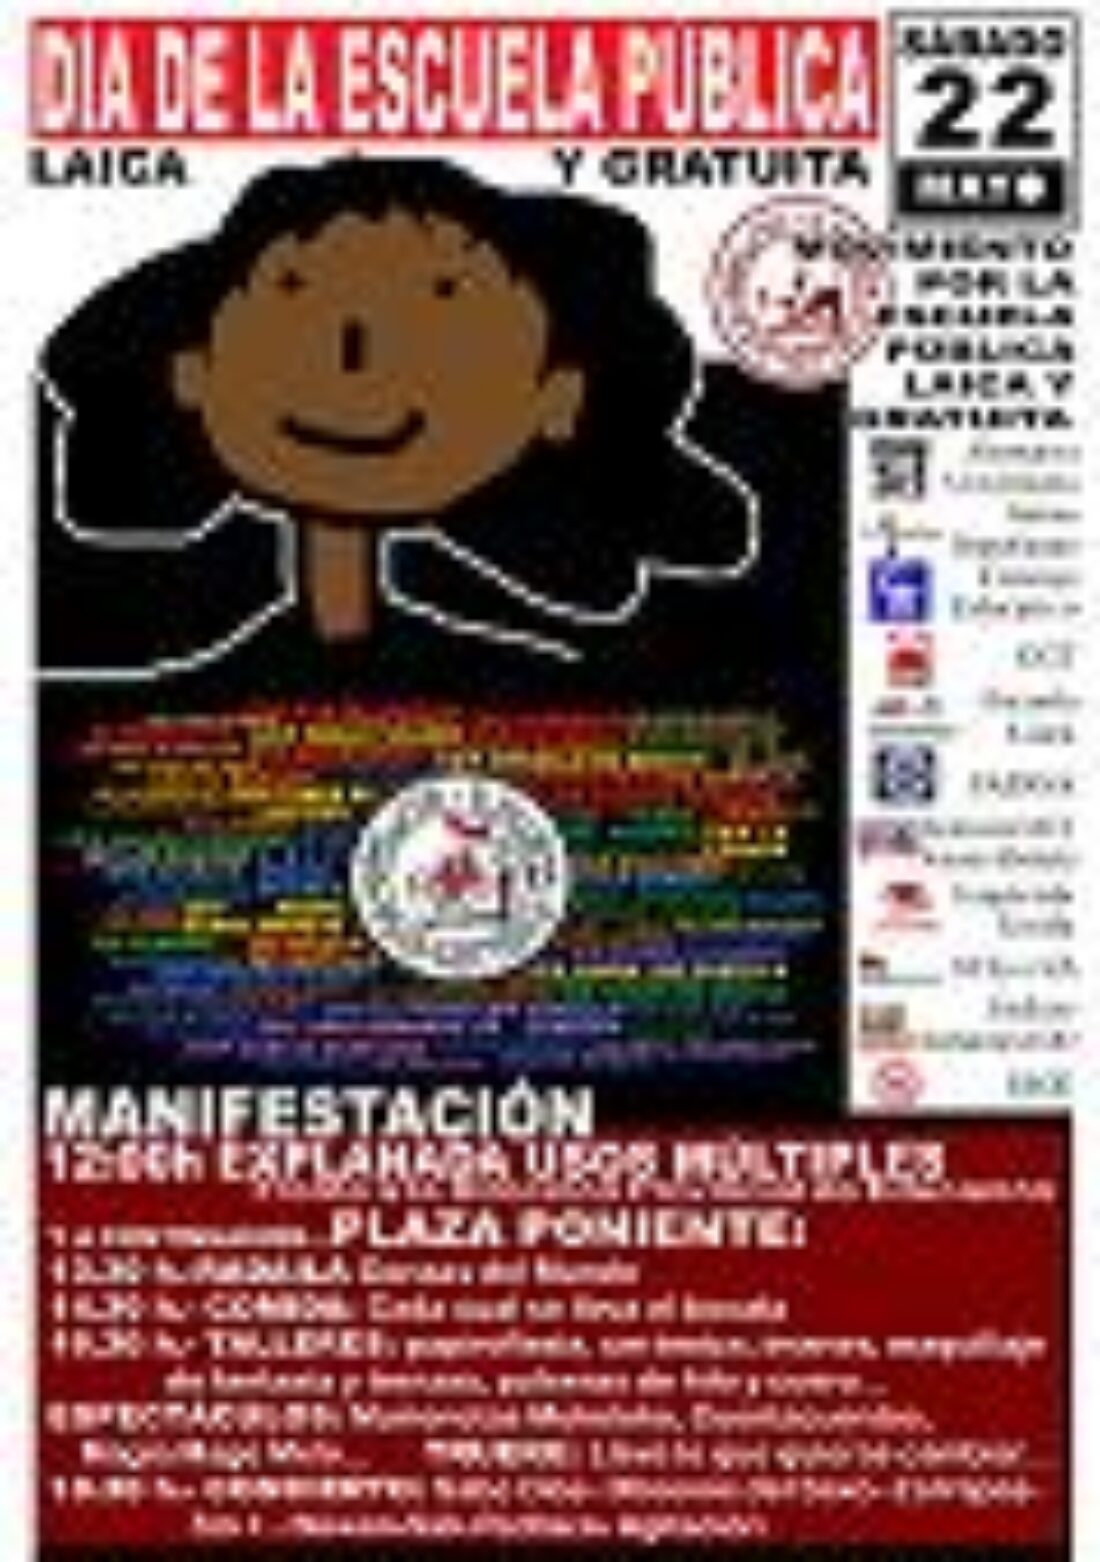 22 mayo, Valladolid : Día de la Escuela Pública, Laica y Gratuita